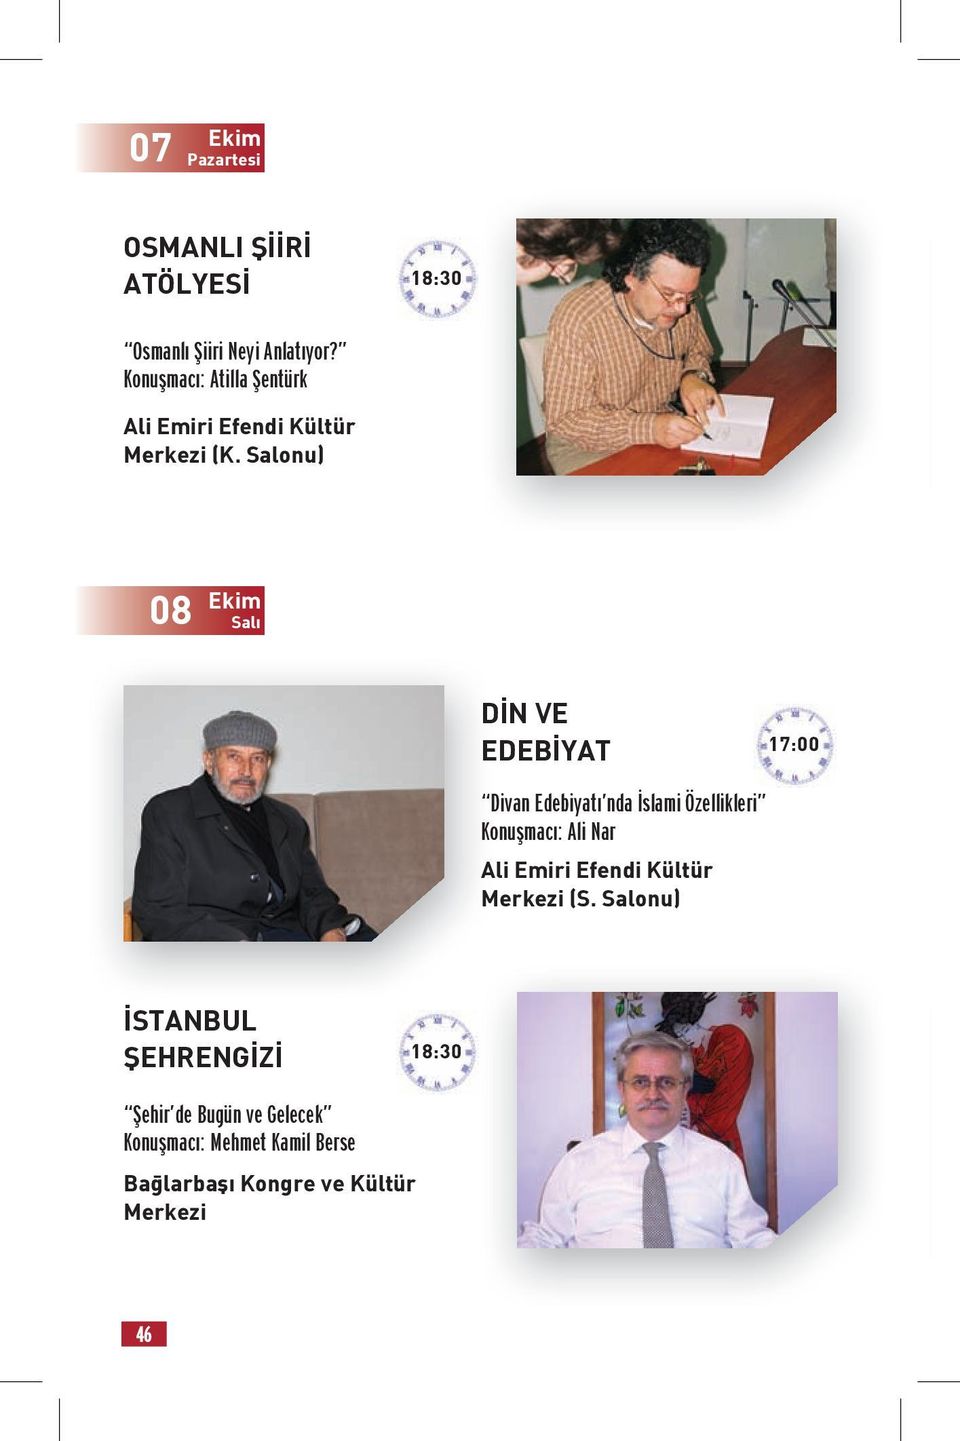 Salonu) 08 Ekim Salı DİN VE EDEBİYAT 17:00 Divan Edebiyatı nda İslami